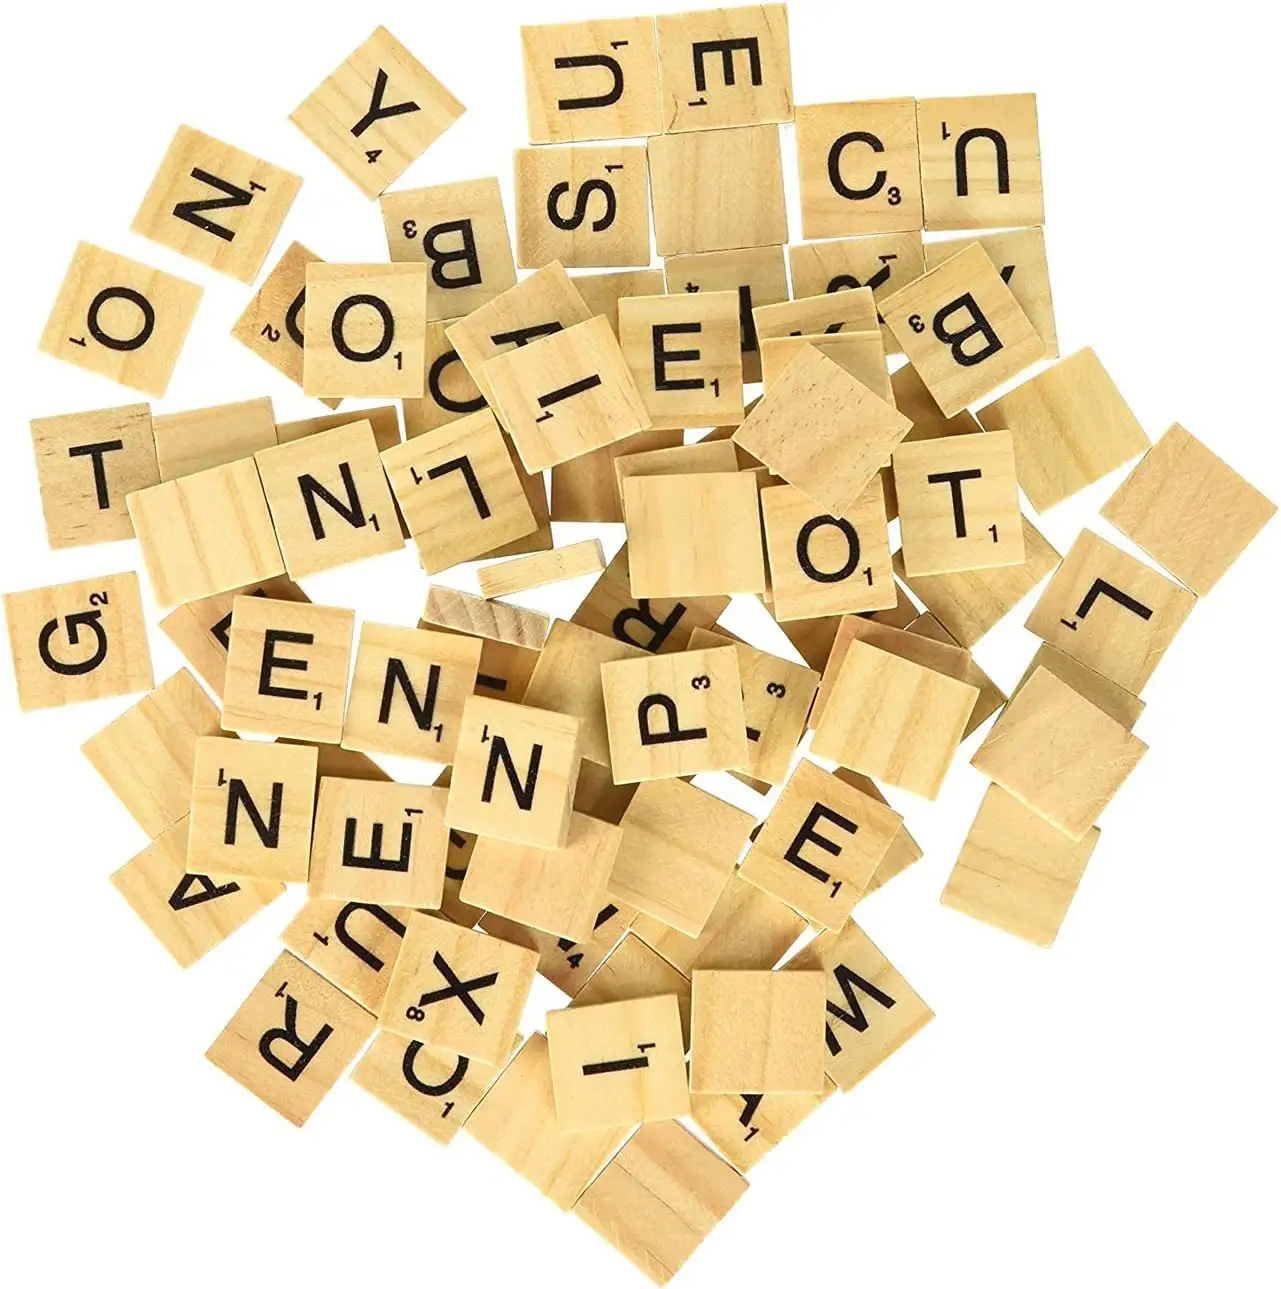 12 pulgadas personalizado niños ortografía palabras juguetes juego Boardble Buillettersocks cubos número azulejos decoraciones de madera recuerdo Logo artesanías